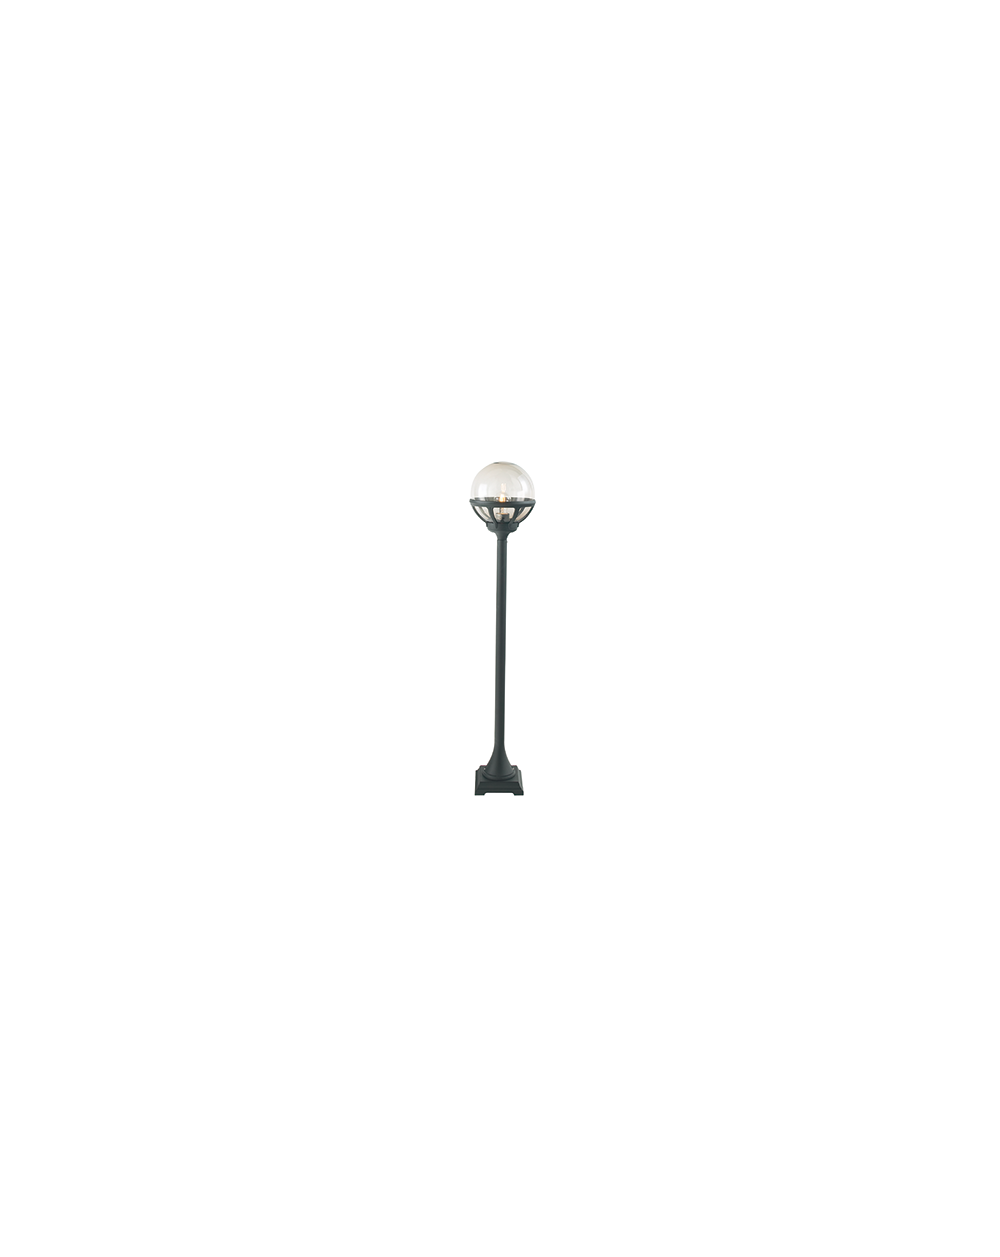 Lampa stojąca Bolonia klosz przeźroczysty - Norlys zewnętrzna oprawa ogrodowa do oświetlania chodników tarasów czarna biała